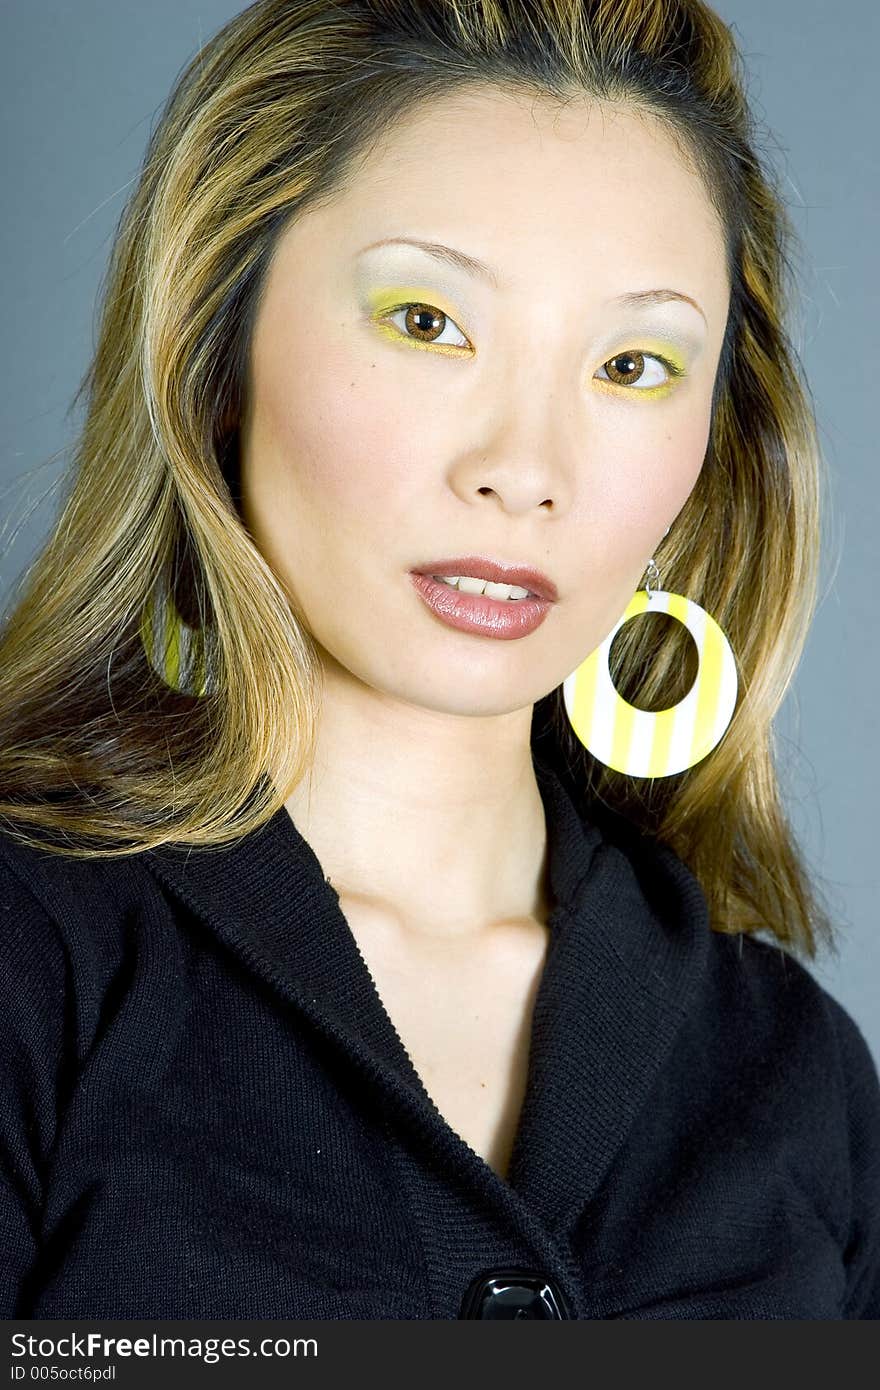 Headshot of a Japanese woman wearing earrings